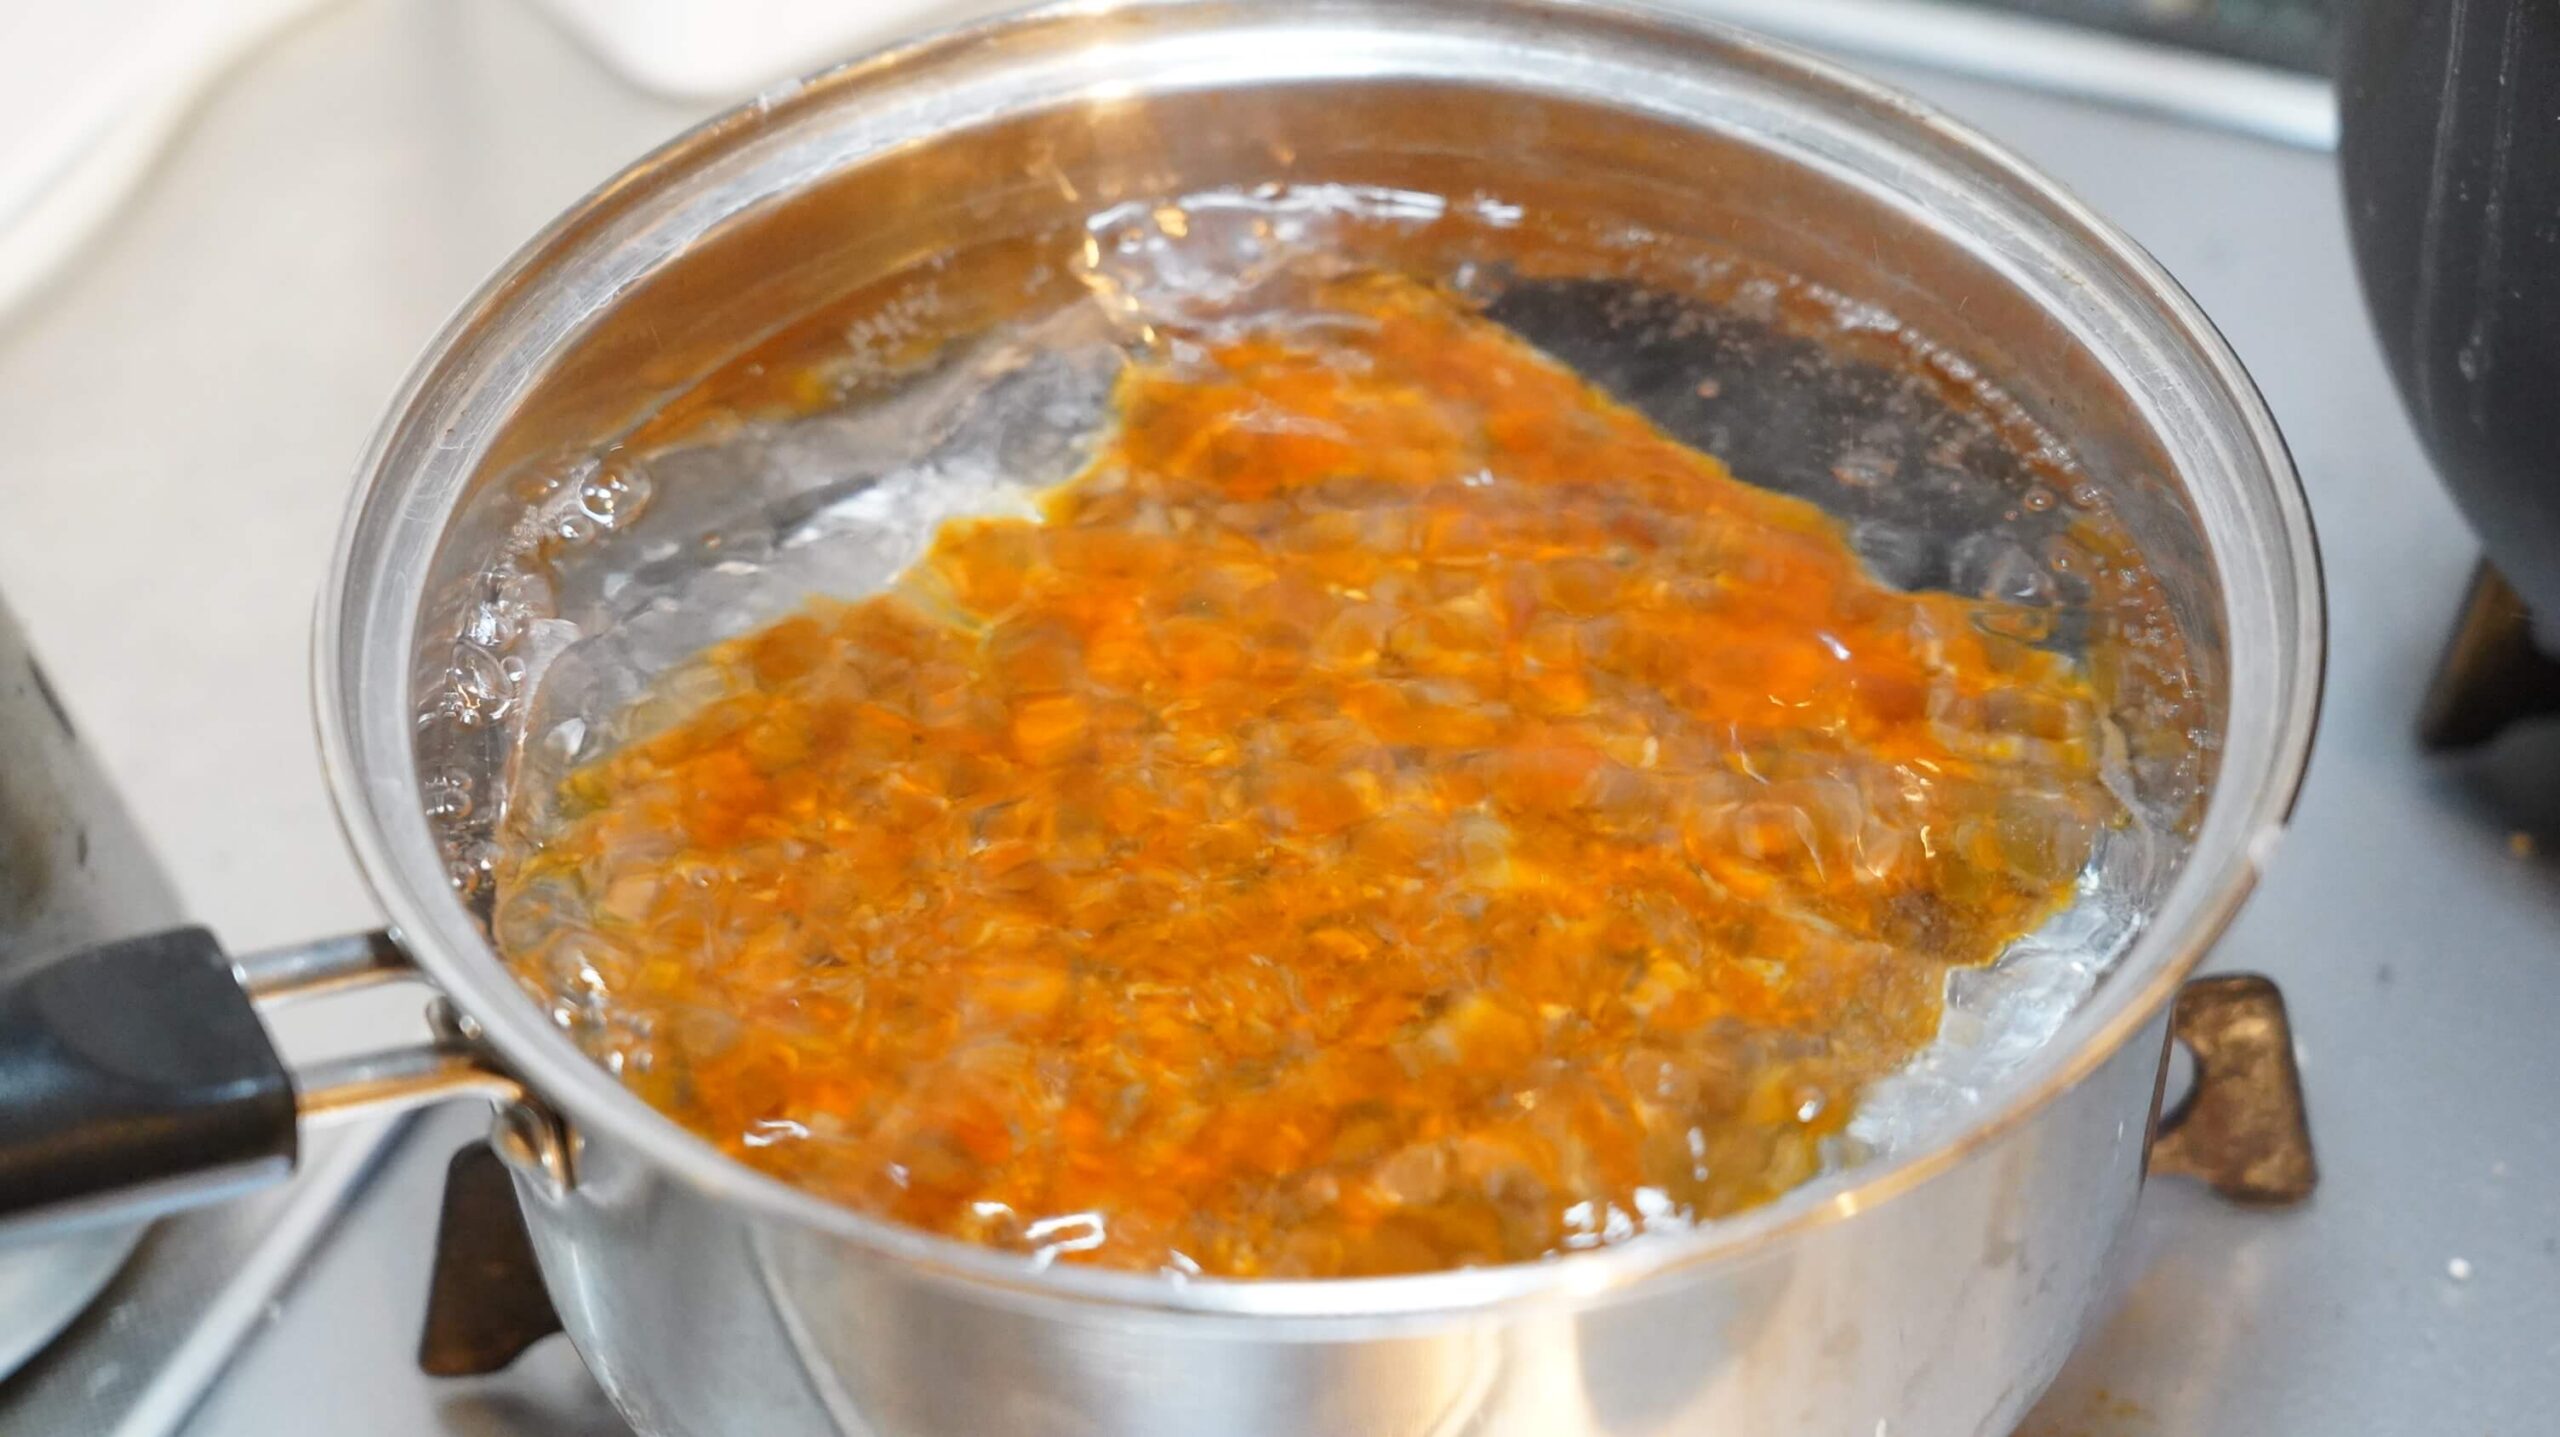 俺のイタリアンの冷凍食品「トリュフ薫るボロネーゼ」のソースを湯せんで調理している写真